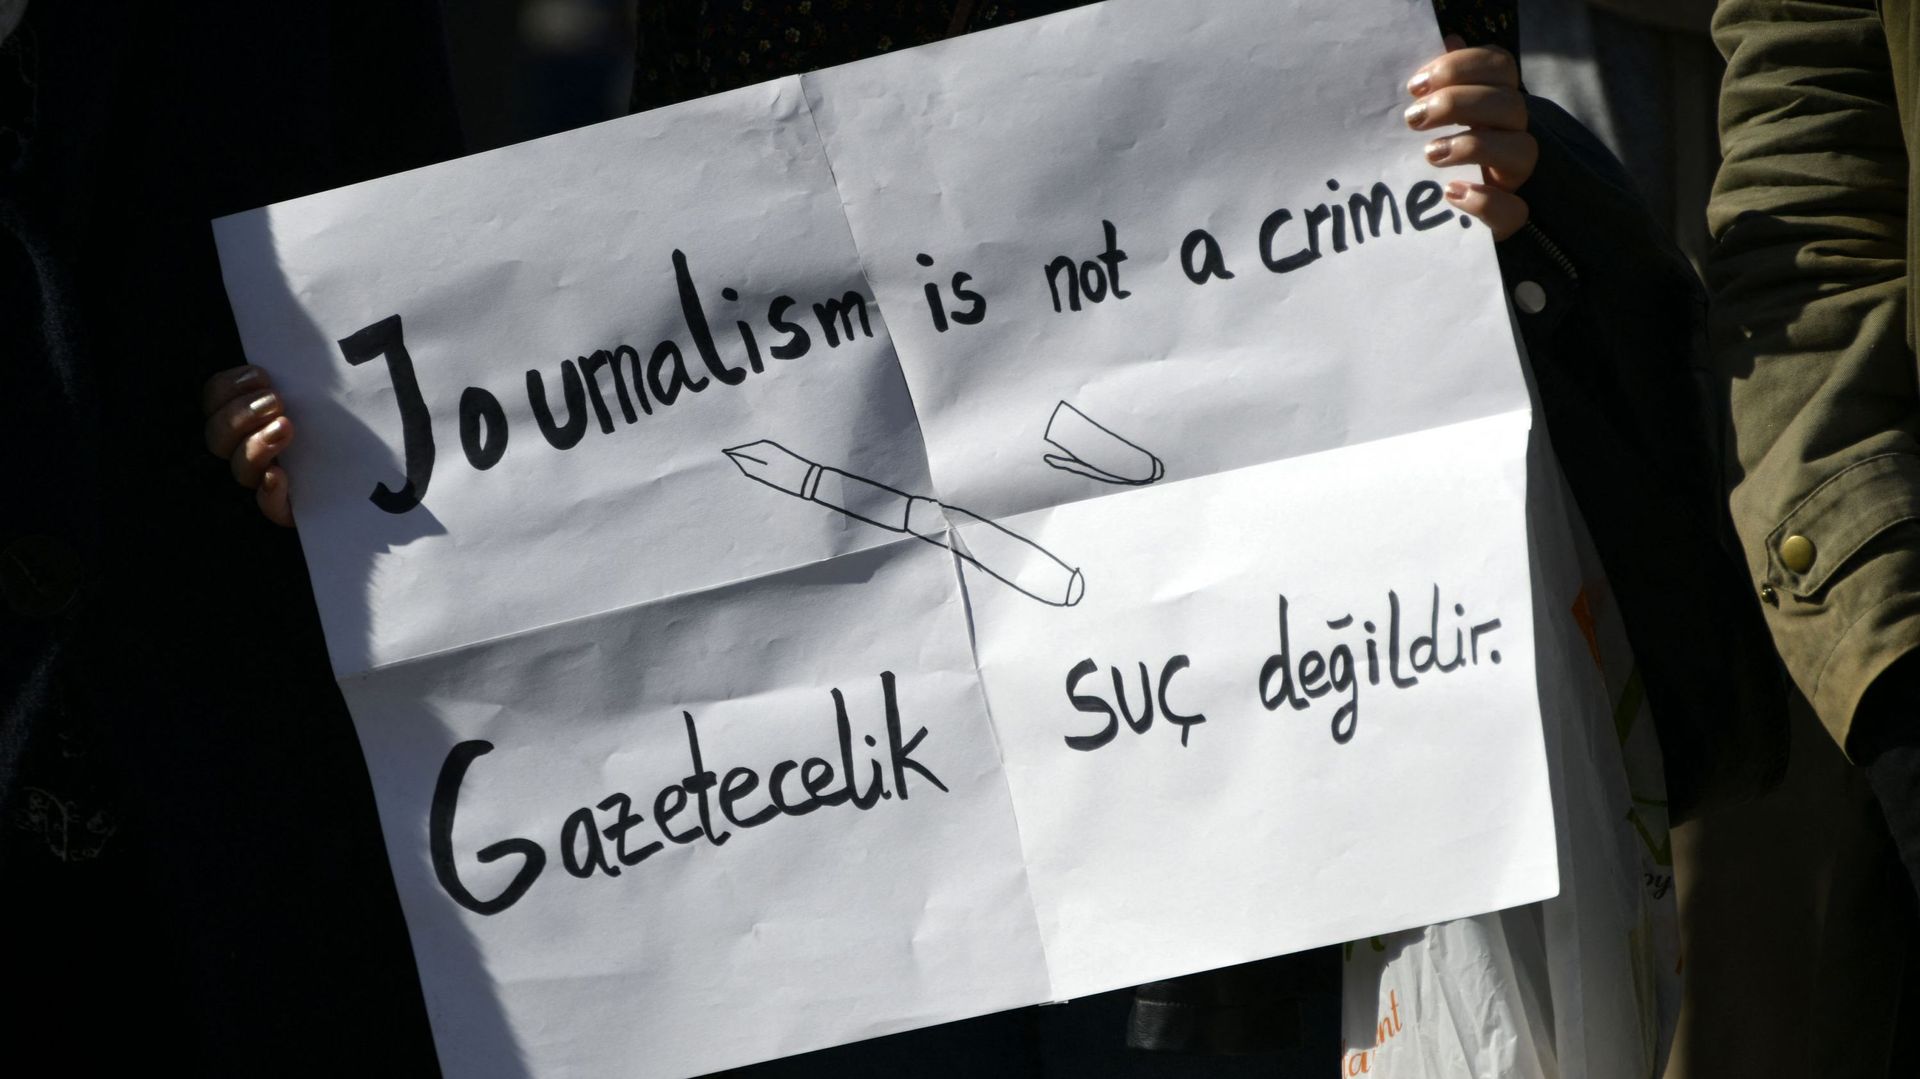 Un manifestant tient une pancarte sur laquelle on peut lire "Le journalisme n'est pas un crime", lors d'une manifestation intitulée "Erdogan n'est pas le bienvenu" en Allemagne